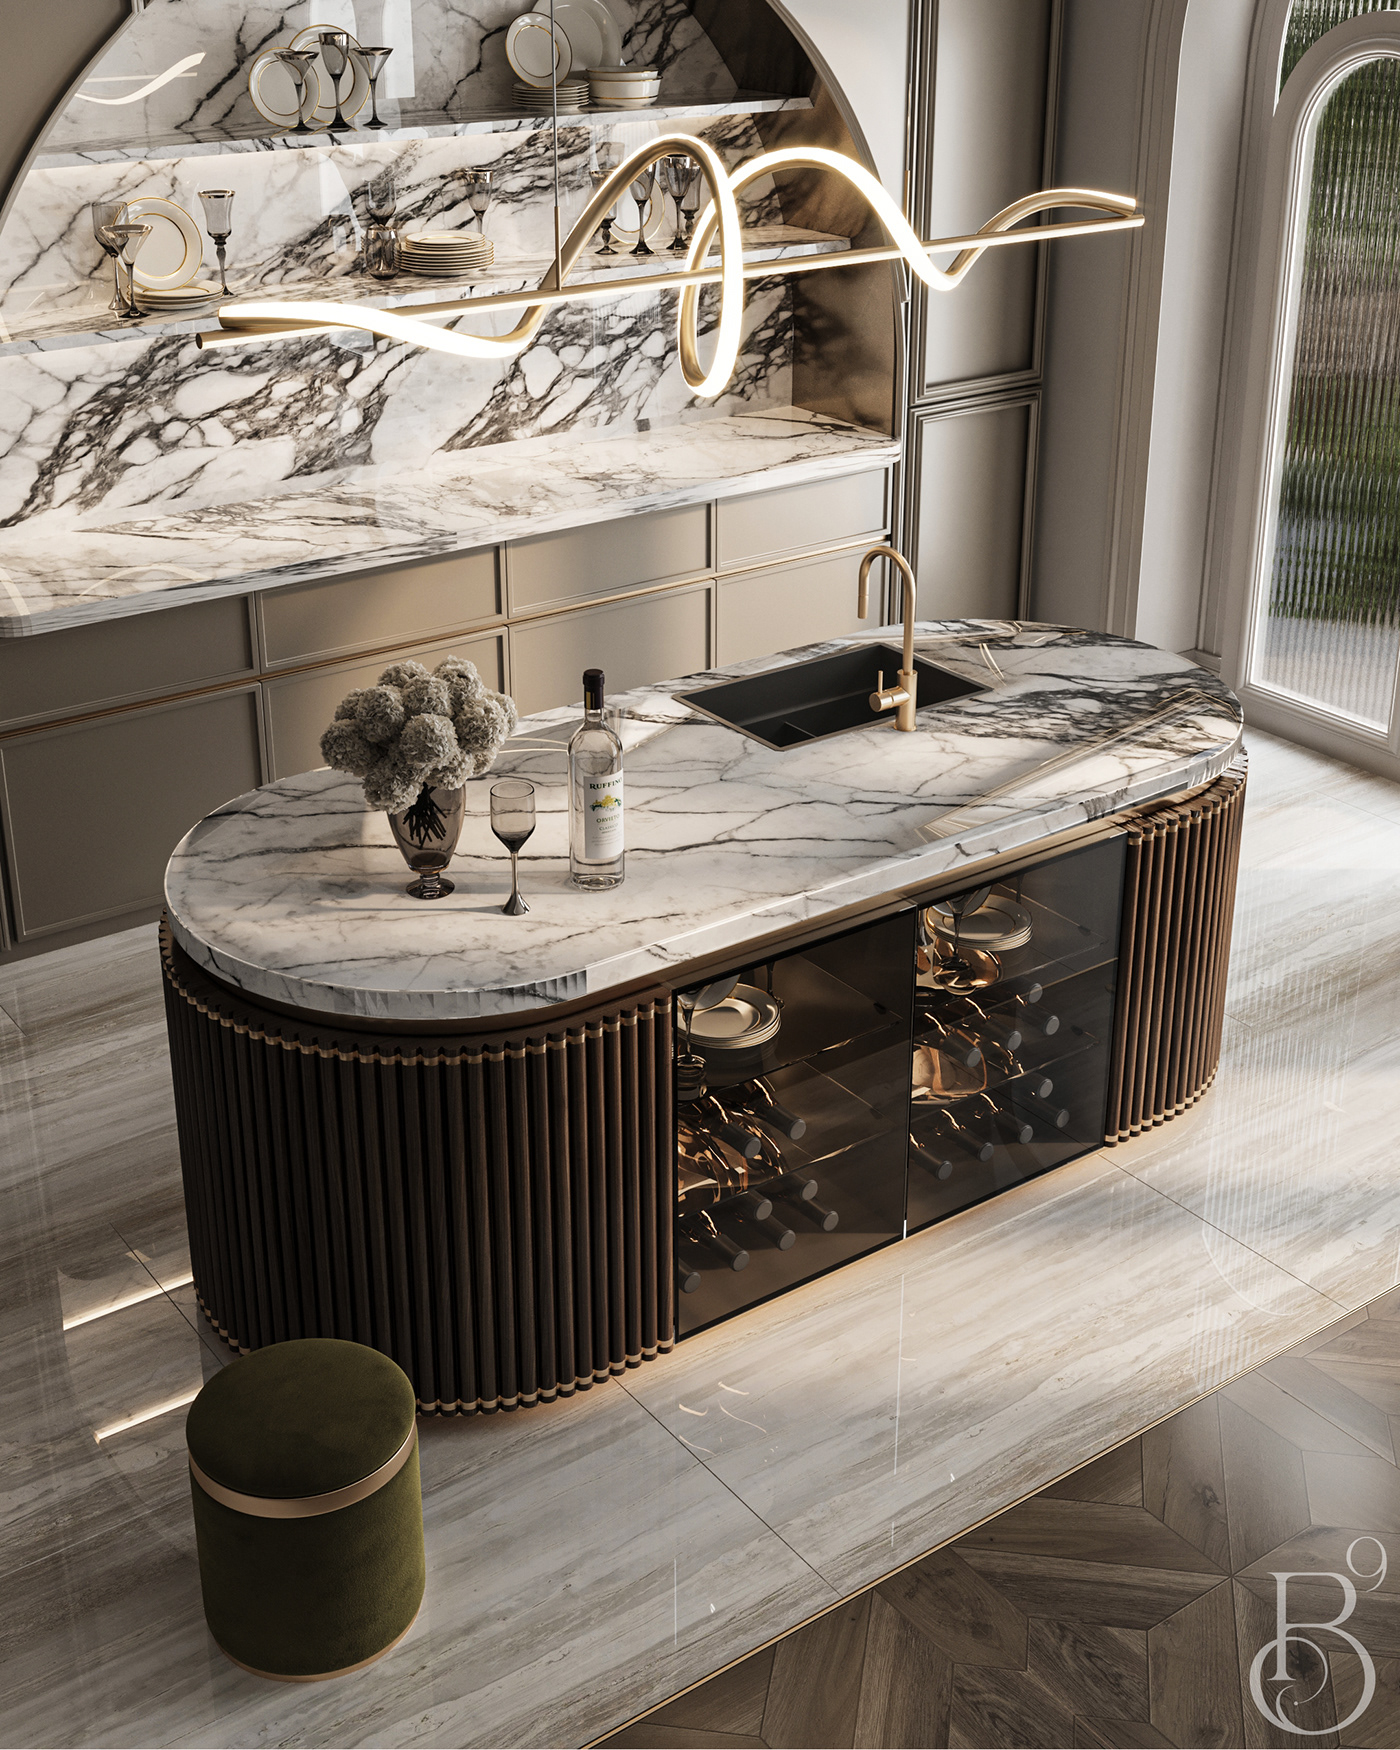 kitchen kitchen design Interior architecture Render visualization interior design  modern 3ds max corona